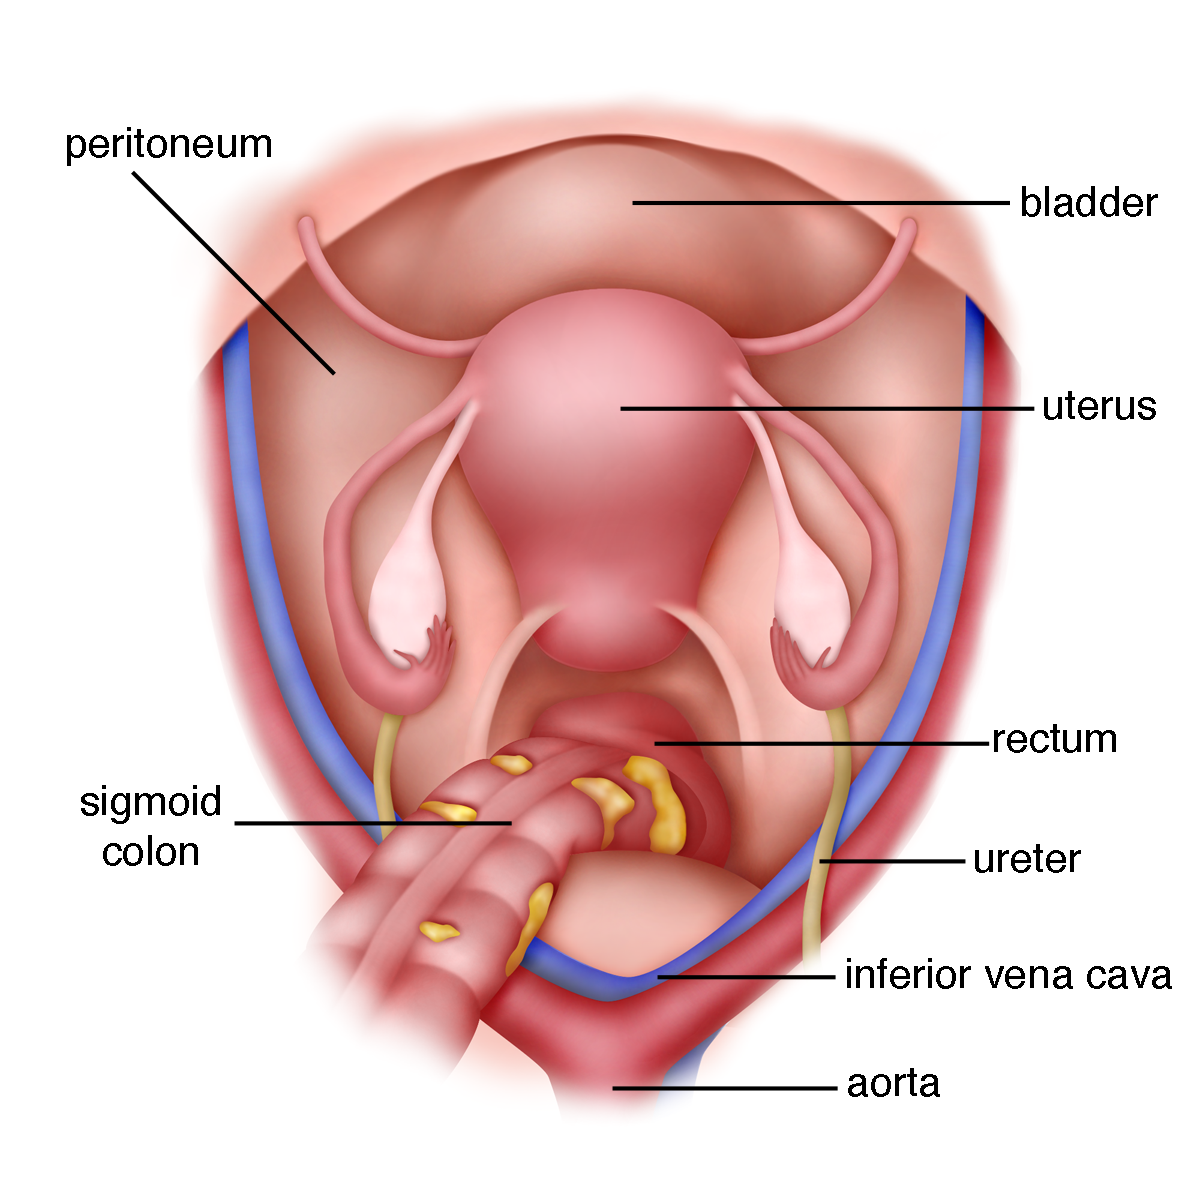 Uterus merupakan organ reproduksi wanita. yang berfungsi sebagai